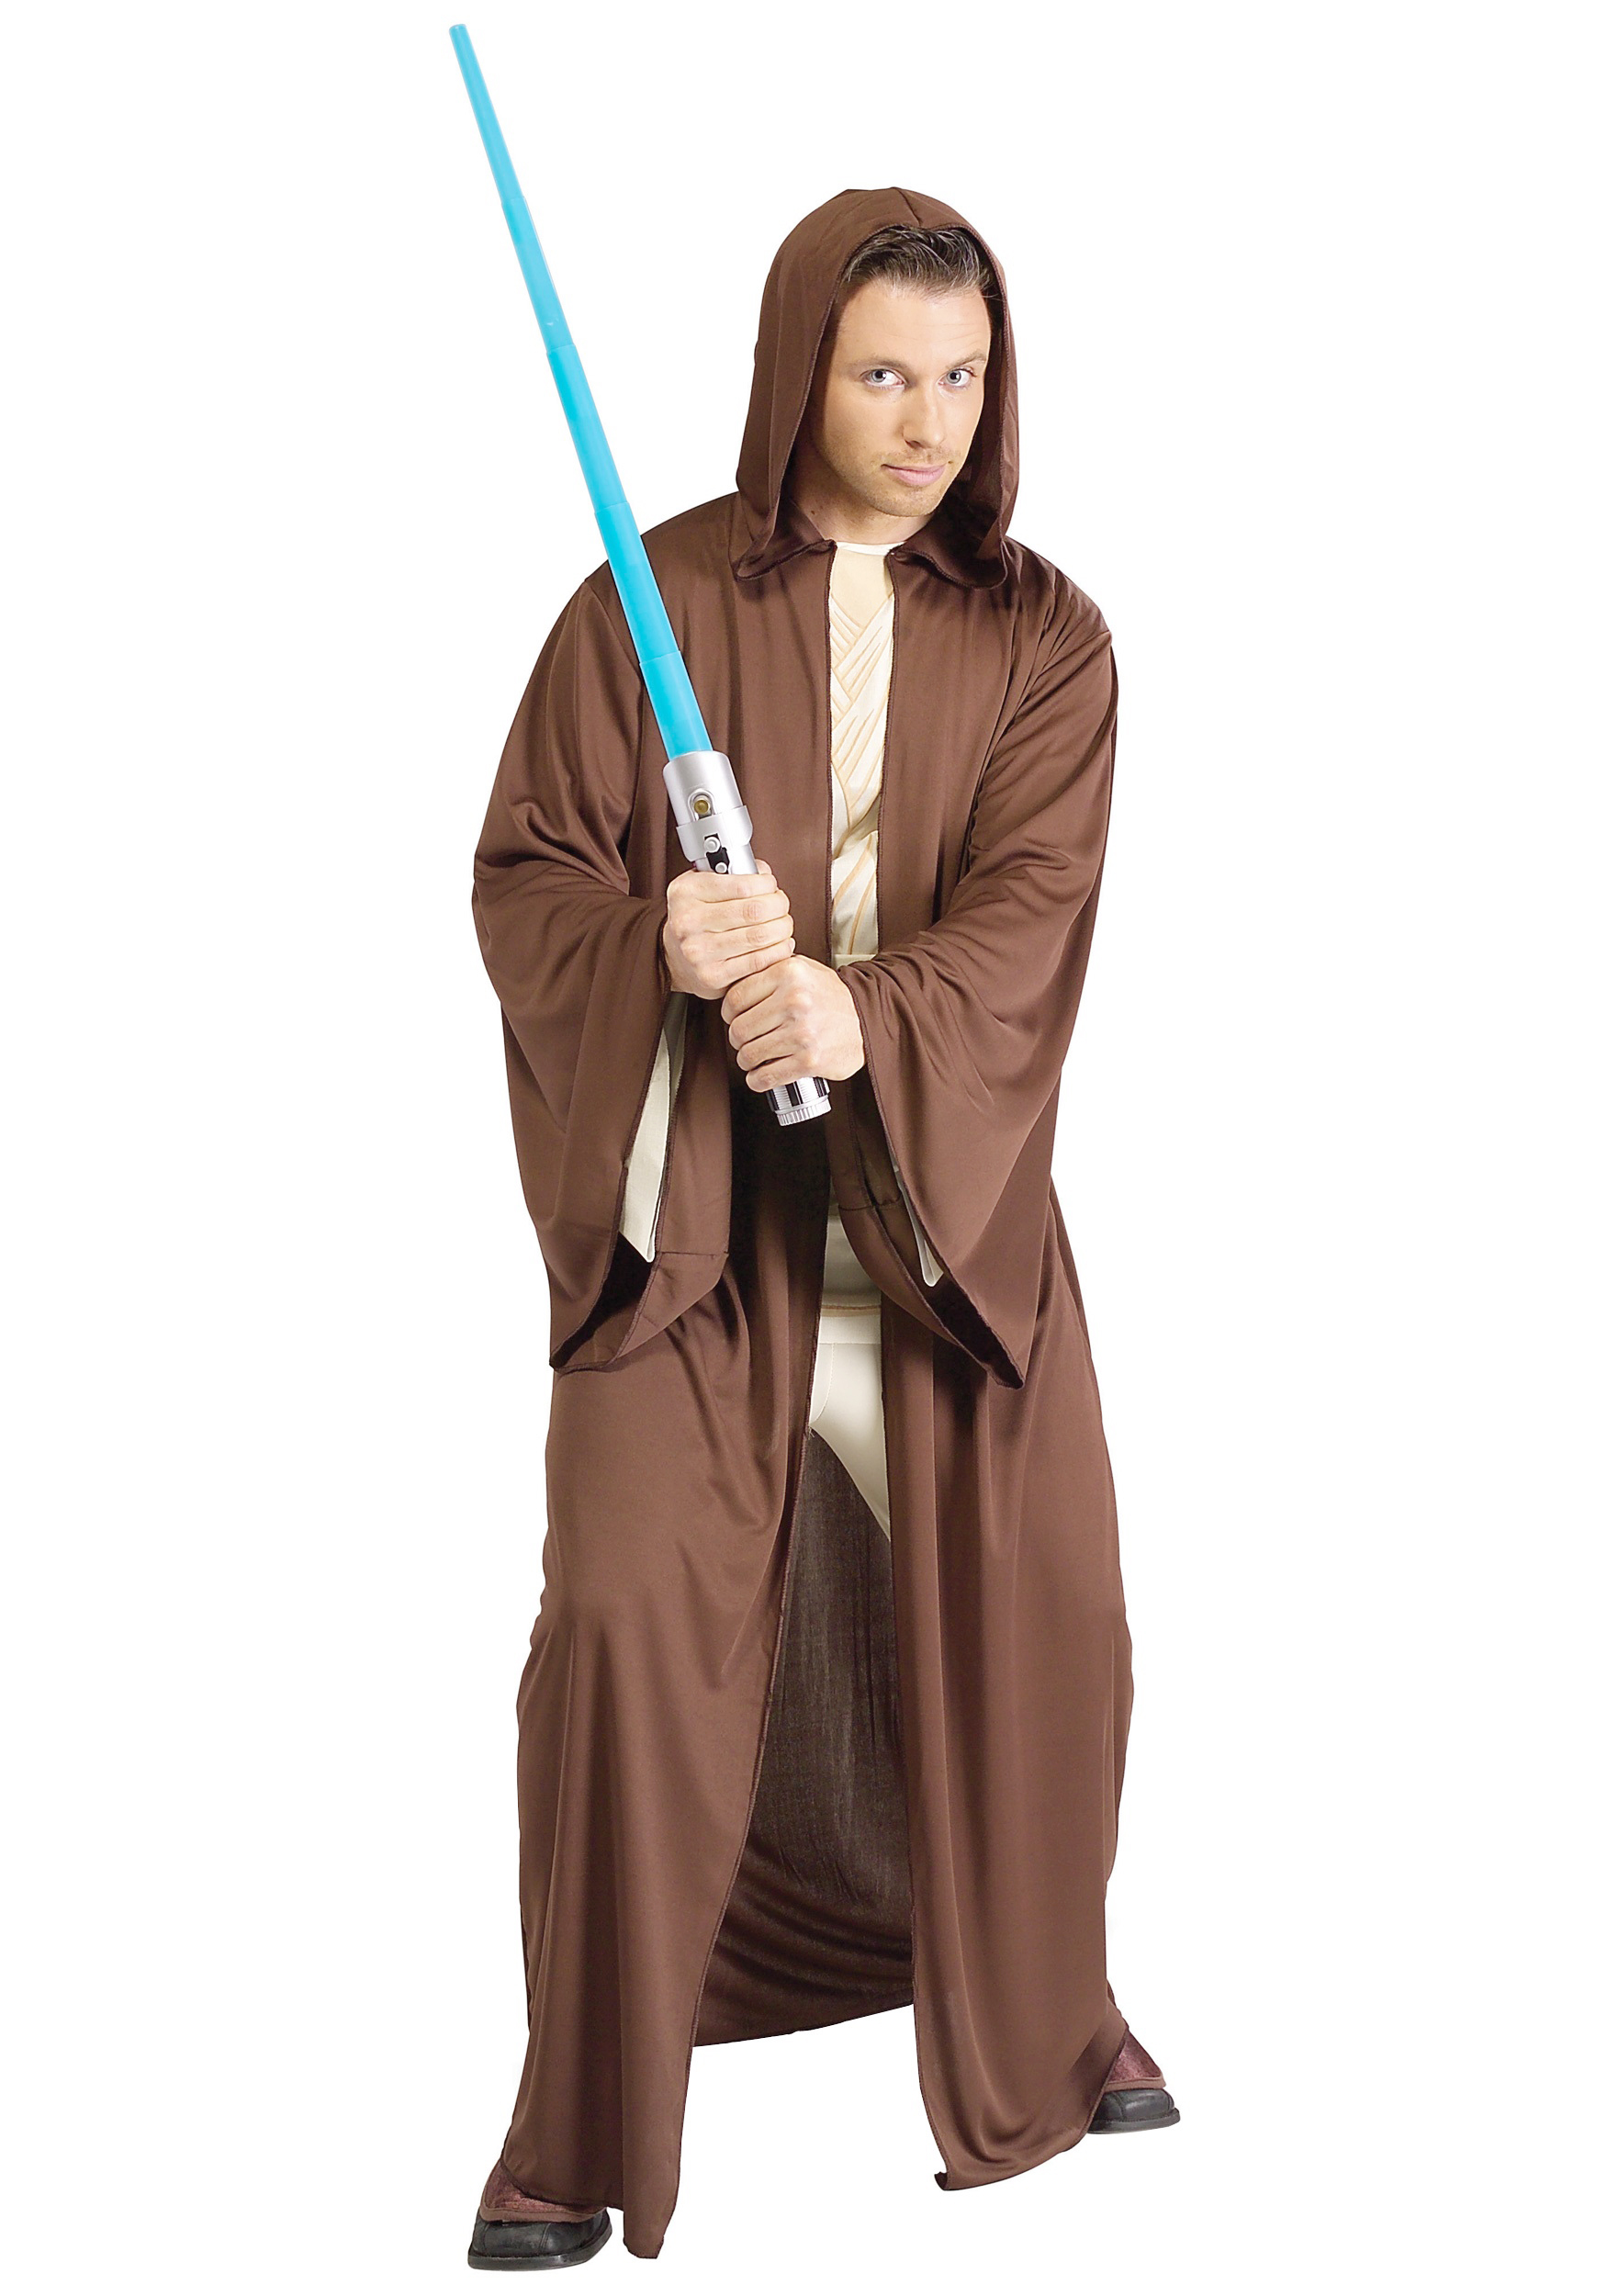 Dank u voor uw hulp geweer zak Star Wars Jedi kostuum kopen? Nu €24,95! - FeestinjeBeest.nl